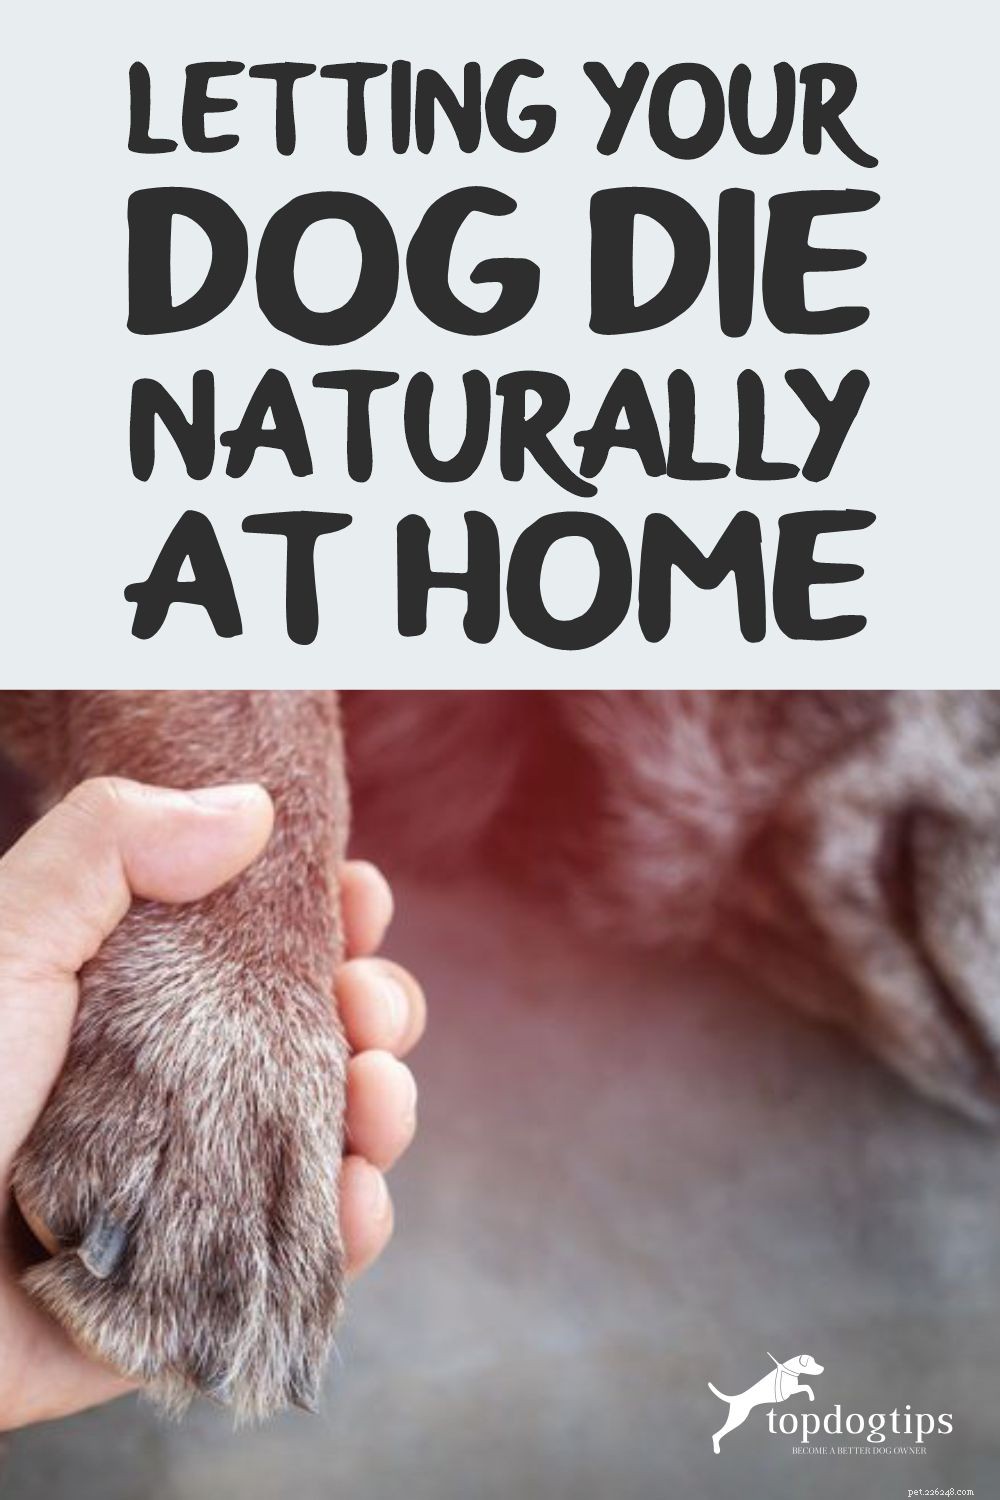 집에서 개가 자연스럽게 죽도록 내버려 두십시오